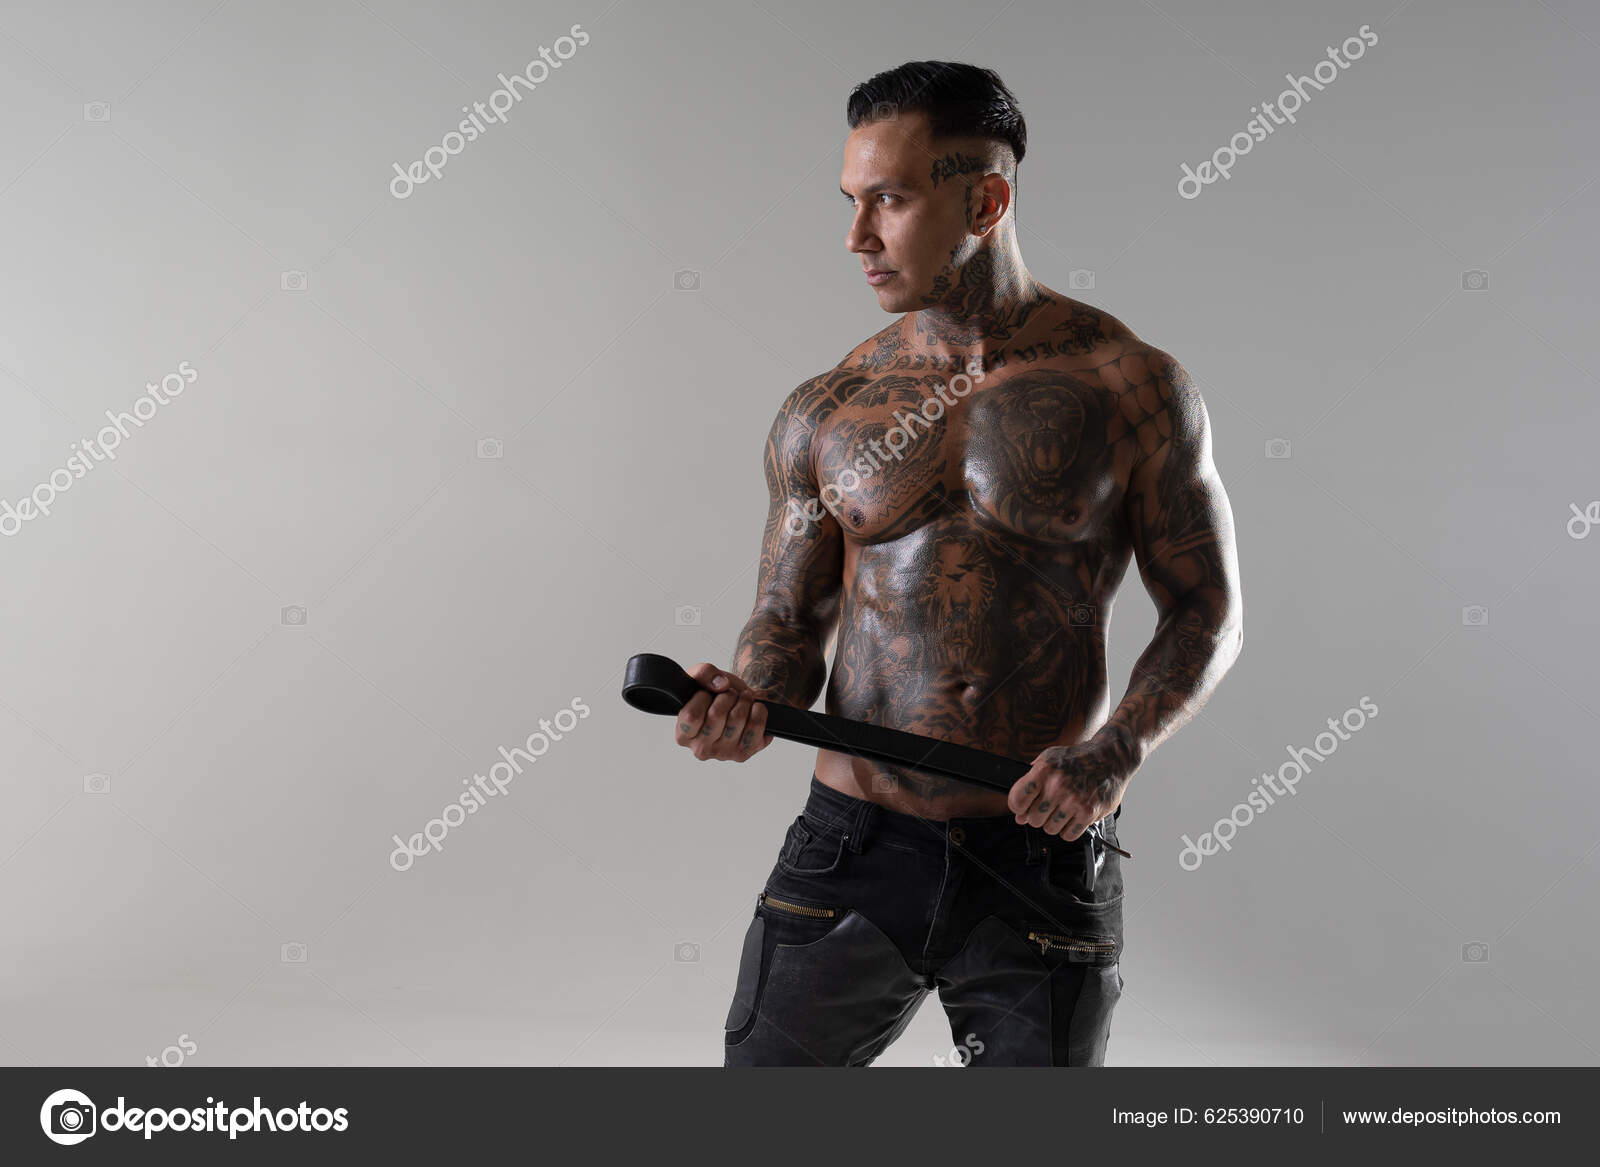 https://st5.depositphotos.com/14172970/62539/i/1600/depositphotos_625390710-stock-photo-muscular-shirtless-young-man-whip.jpg